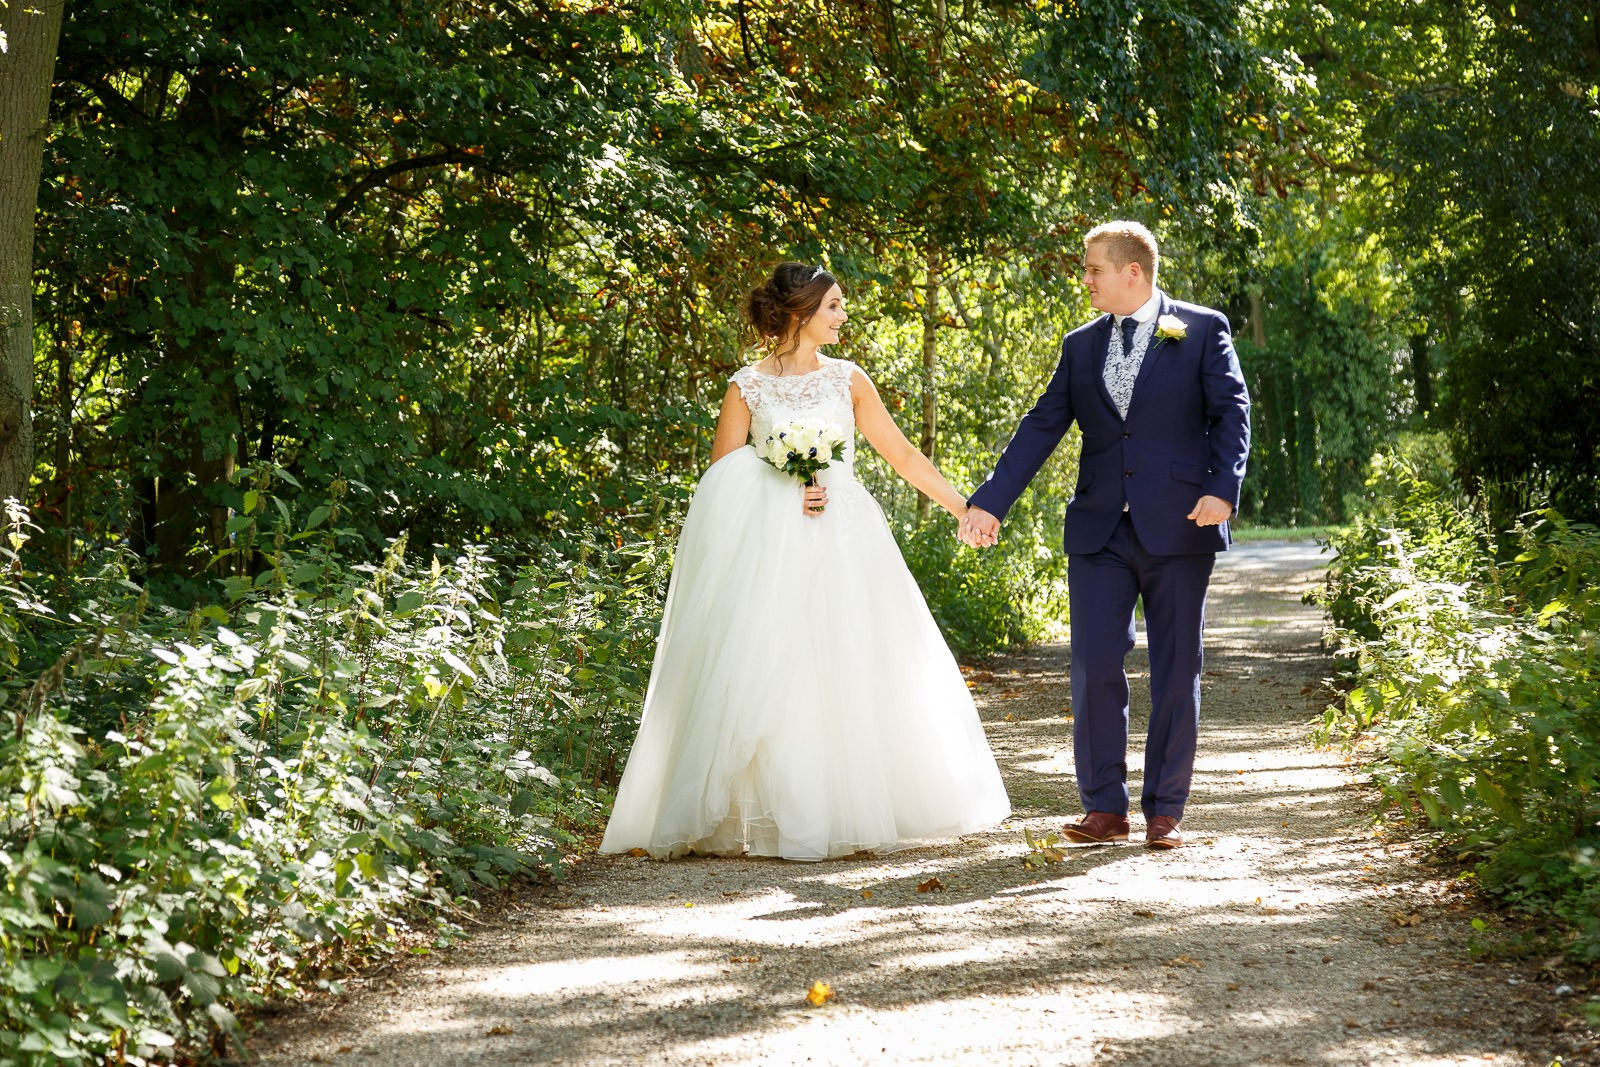 Cornwell Photographer | Destination Wedding Photographers | WeddingPlanner.co.uk